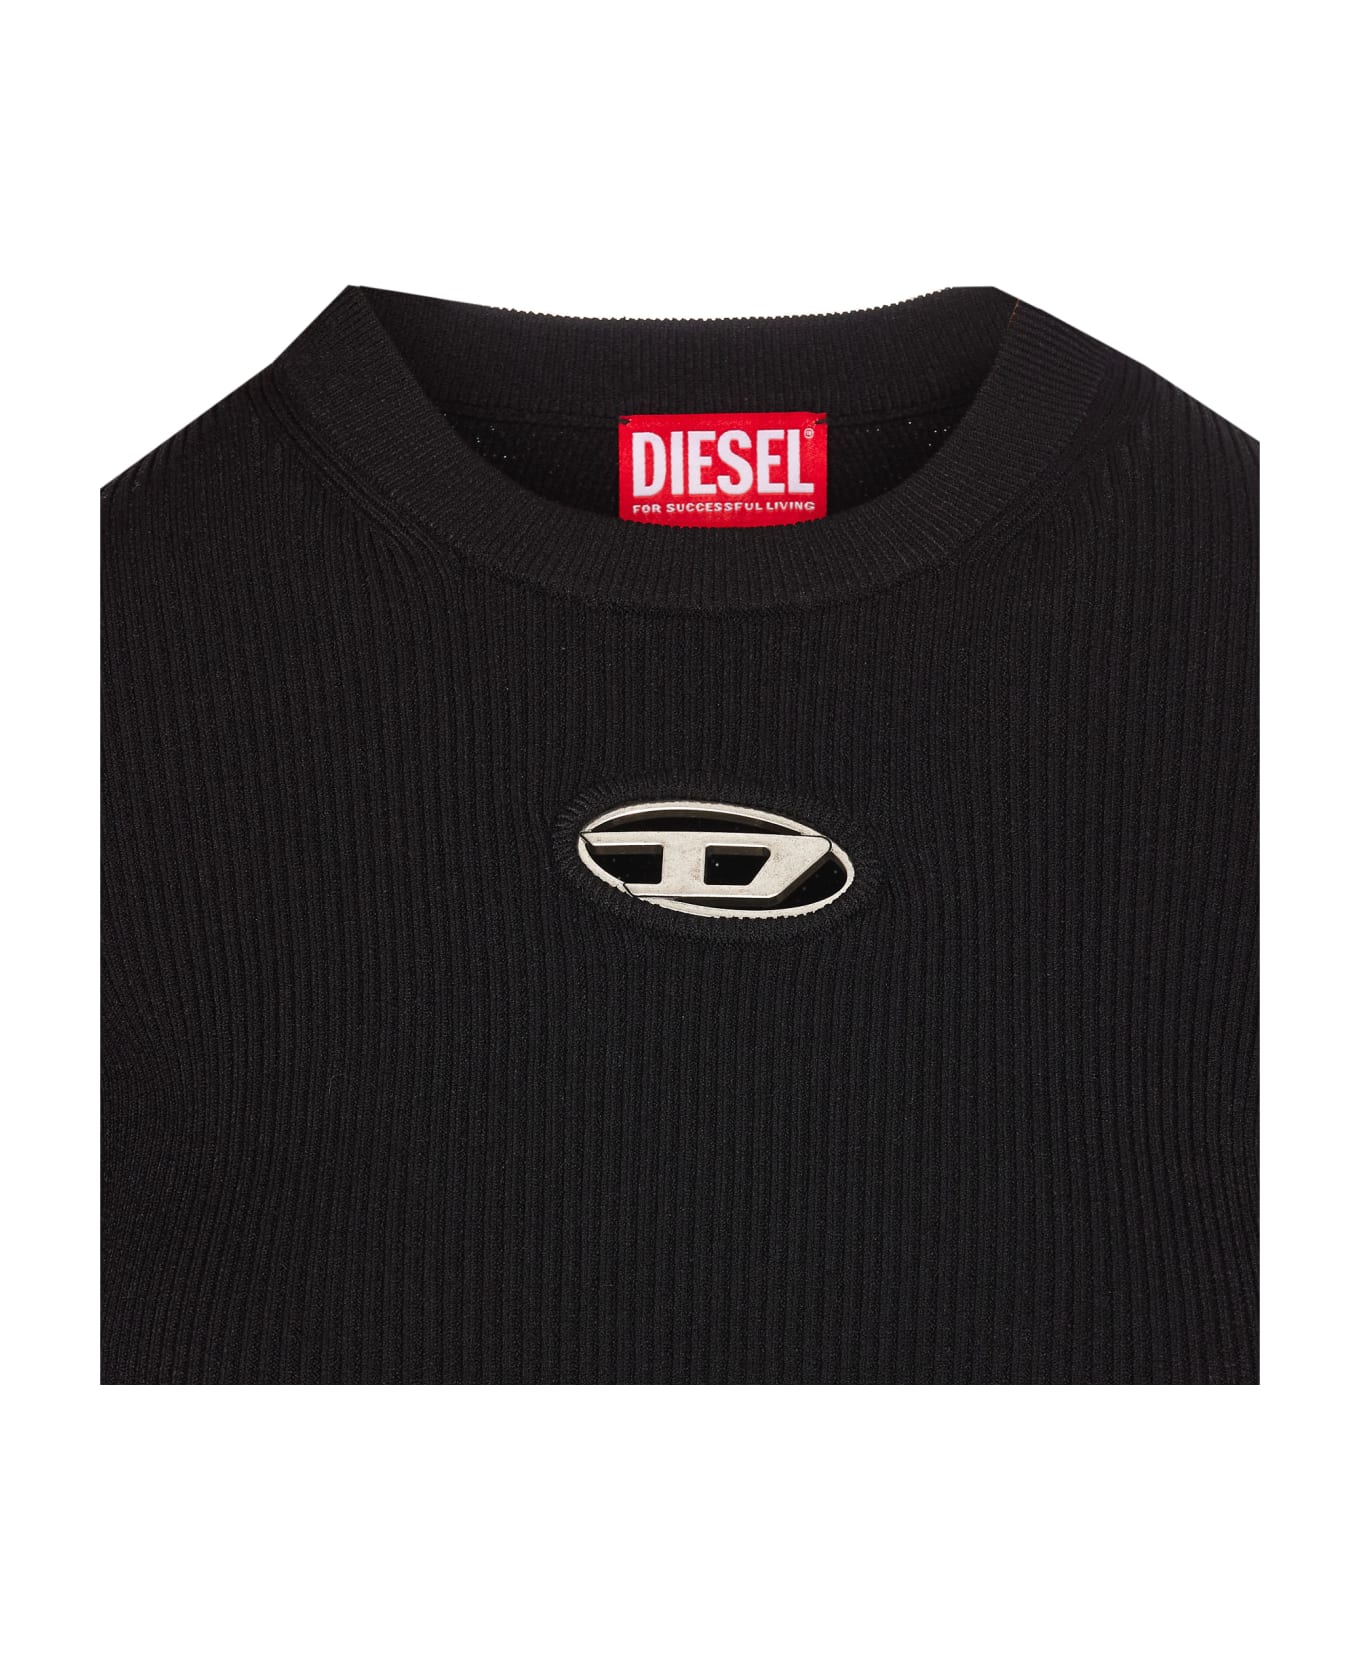 Diesel Logo Long Sleeves Top - Black